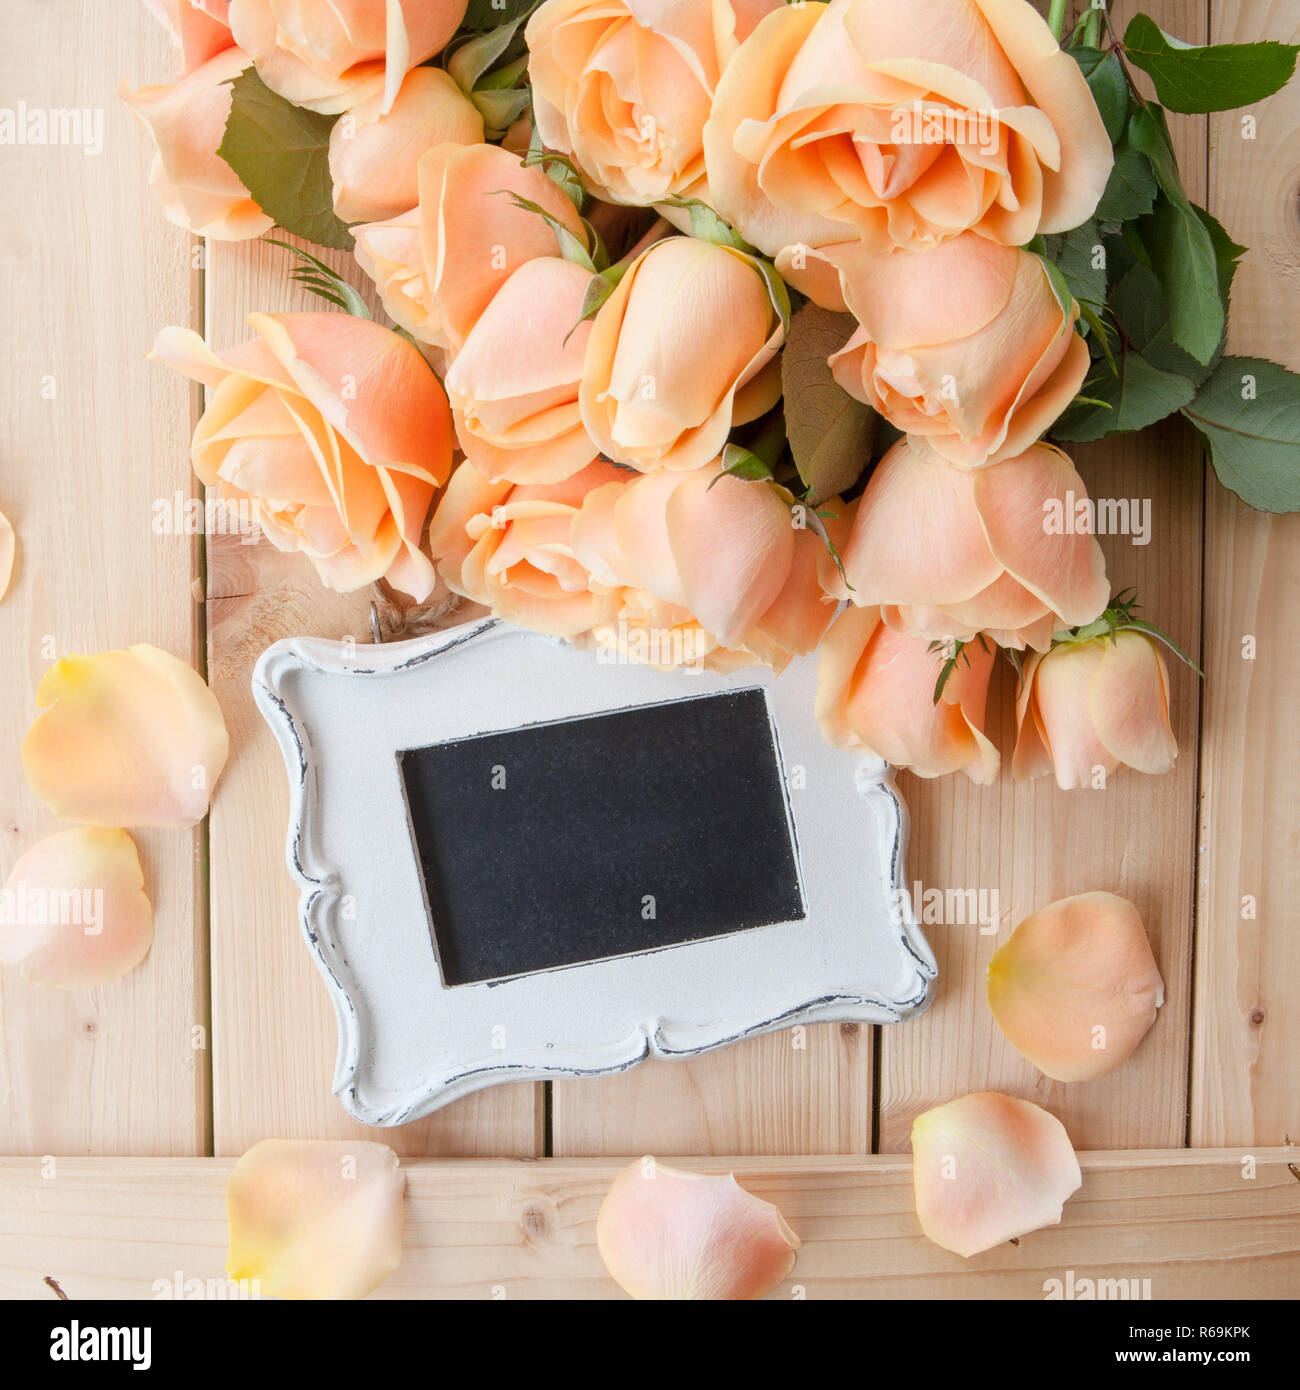 Rosas color durazno Fotografía de stock - Alamy